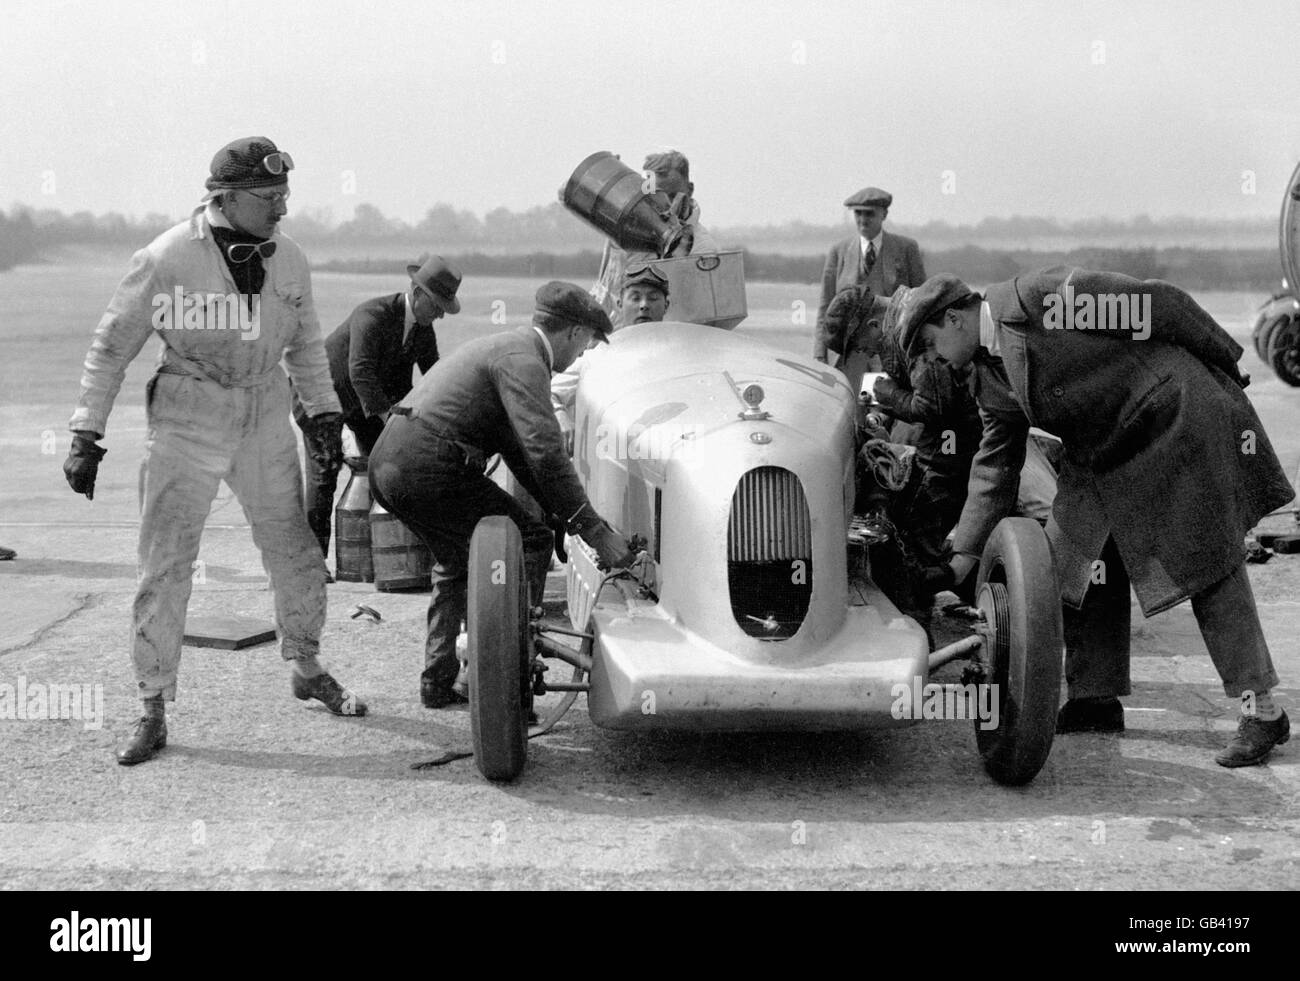 Der Alfa Romeo von George Eyston und seinem Co-Fahrer RC Stewart wird vor einem Rekordversuch von Mechanikern betreut. Stockfoto